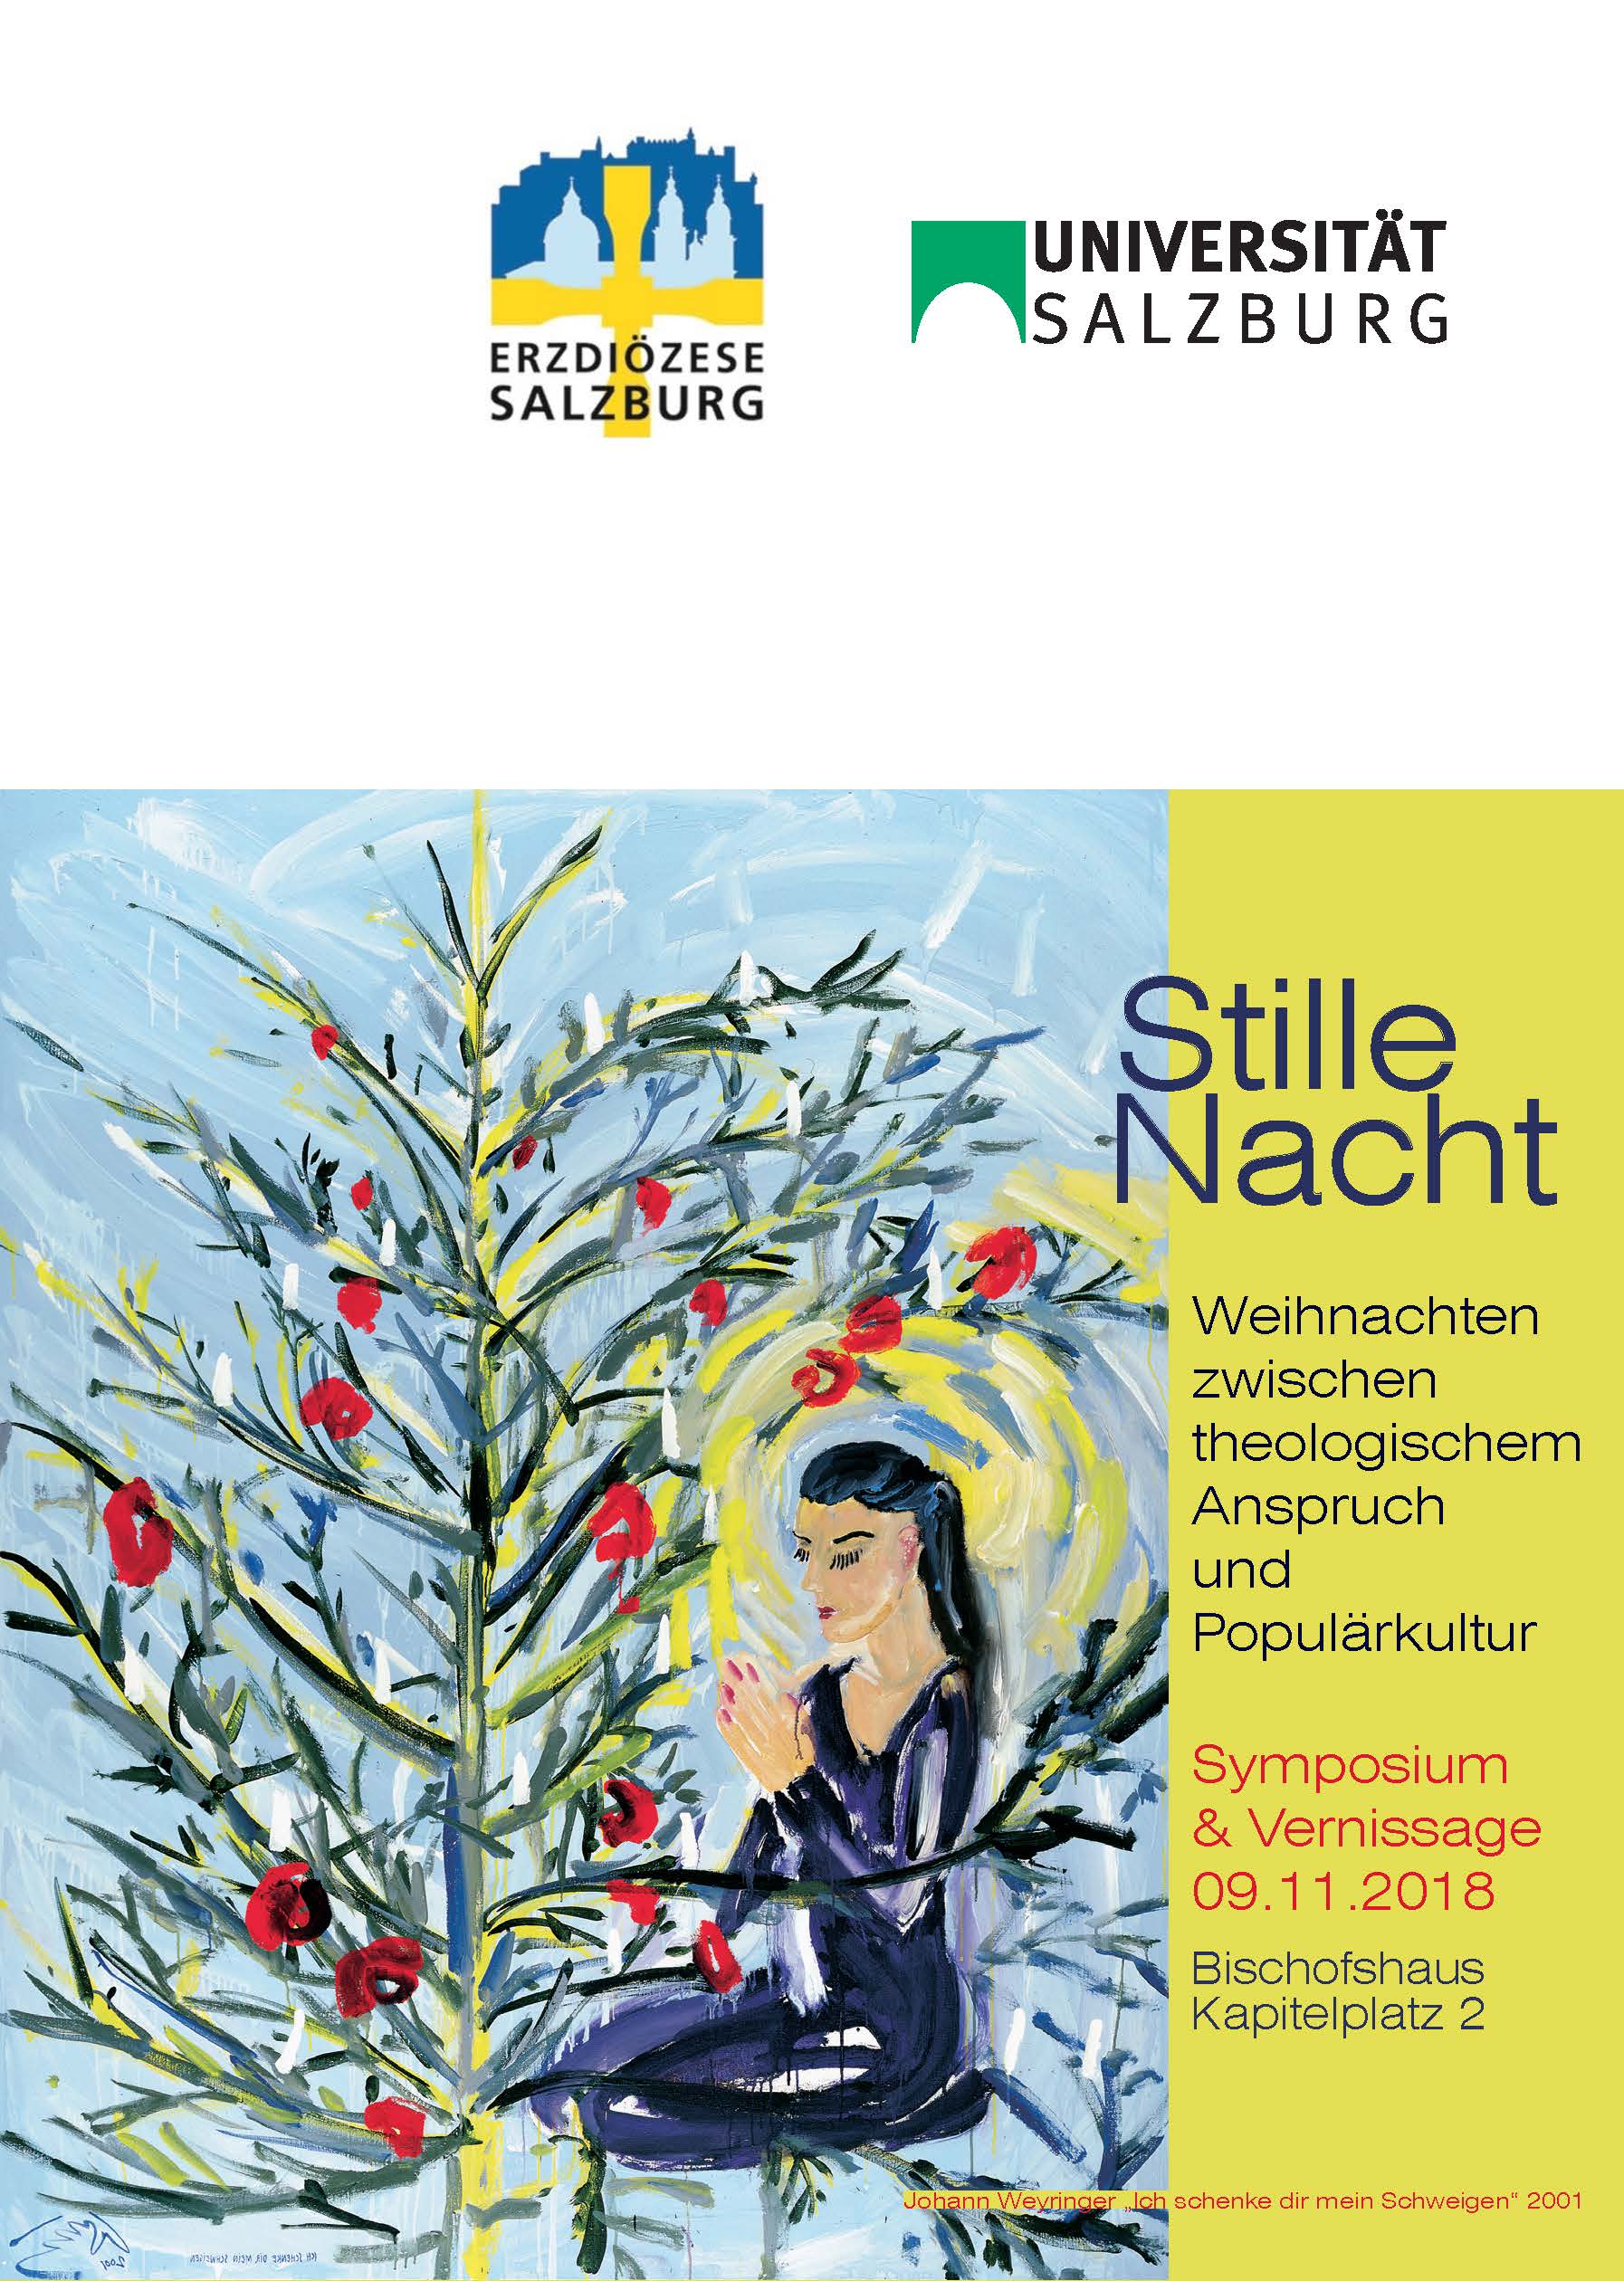 Stille Nacht - Weihnachten zwischen theologischem Anspruch und Populärkultur (09.11.2018) 